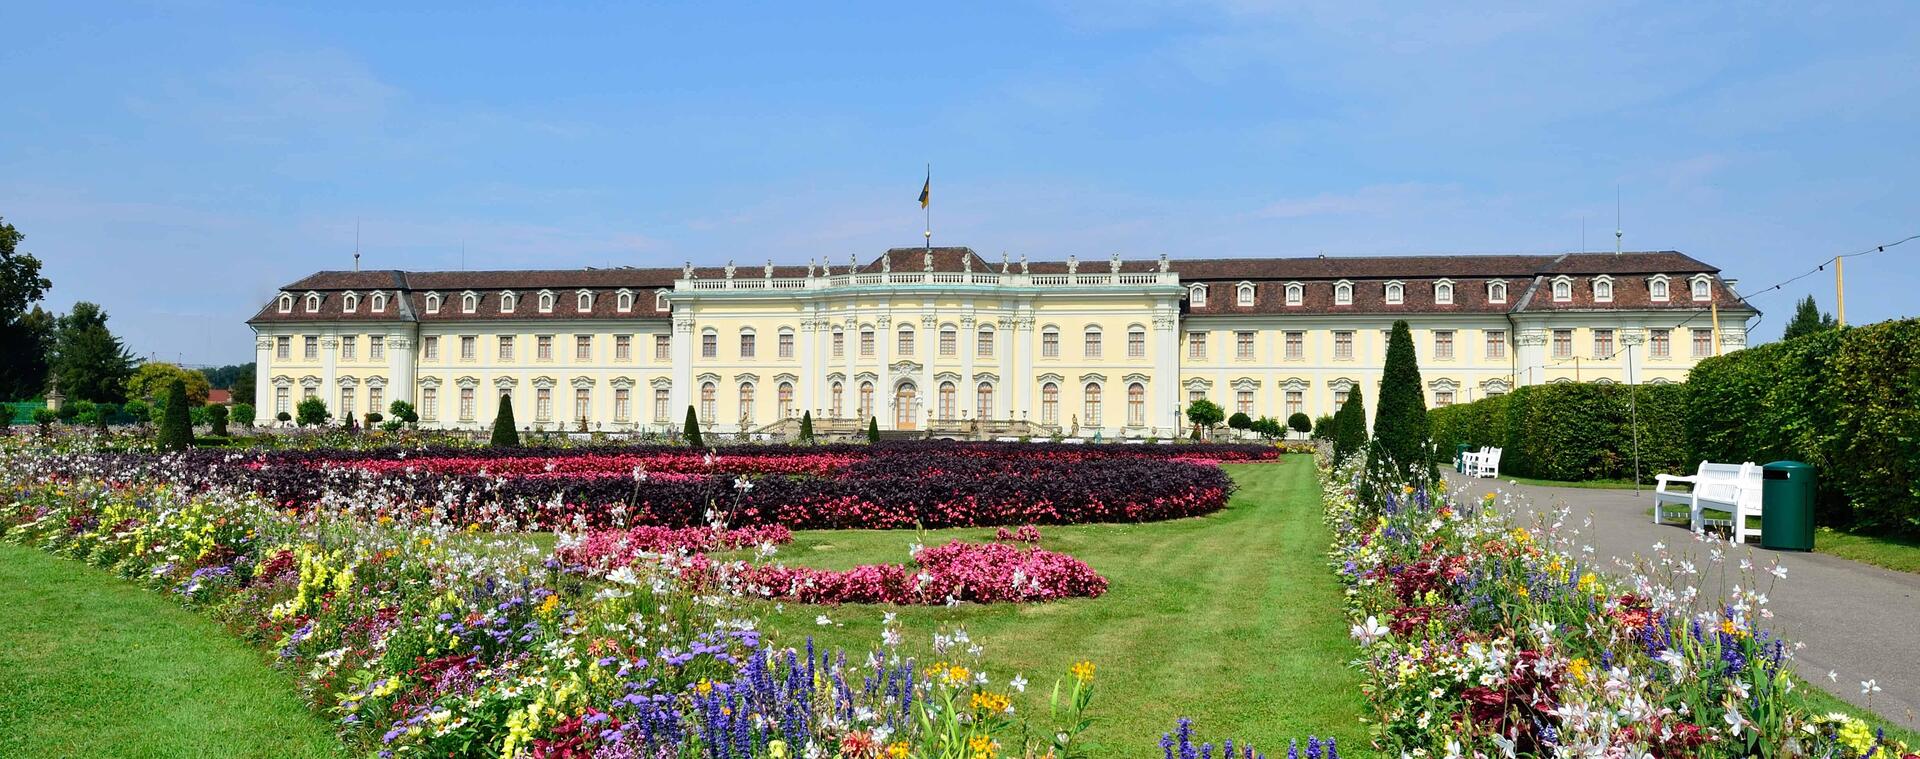 Ludwigsburger Schloss